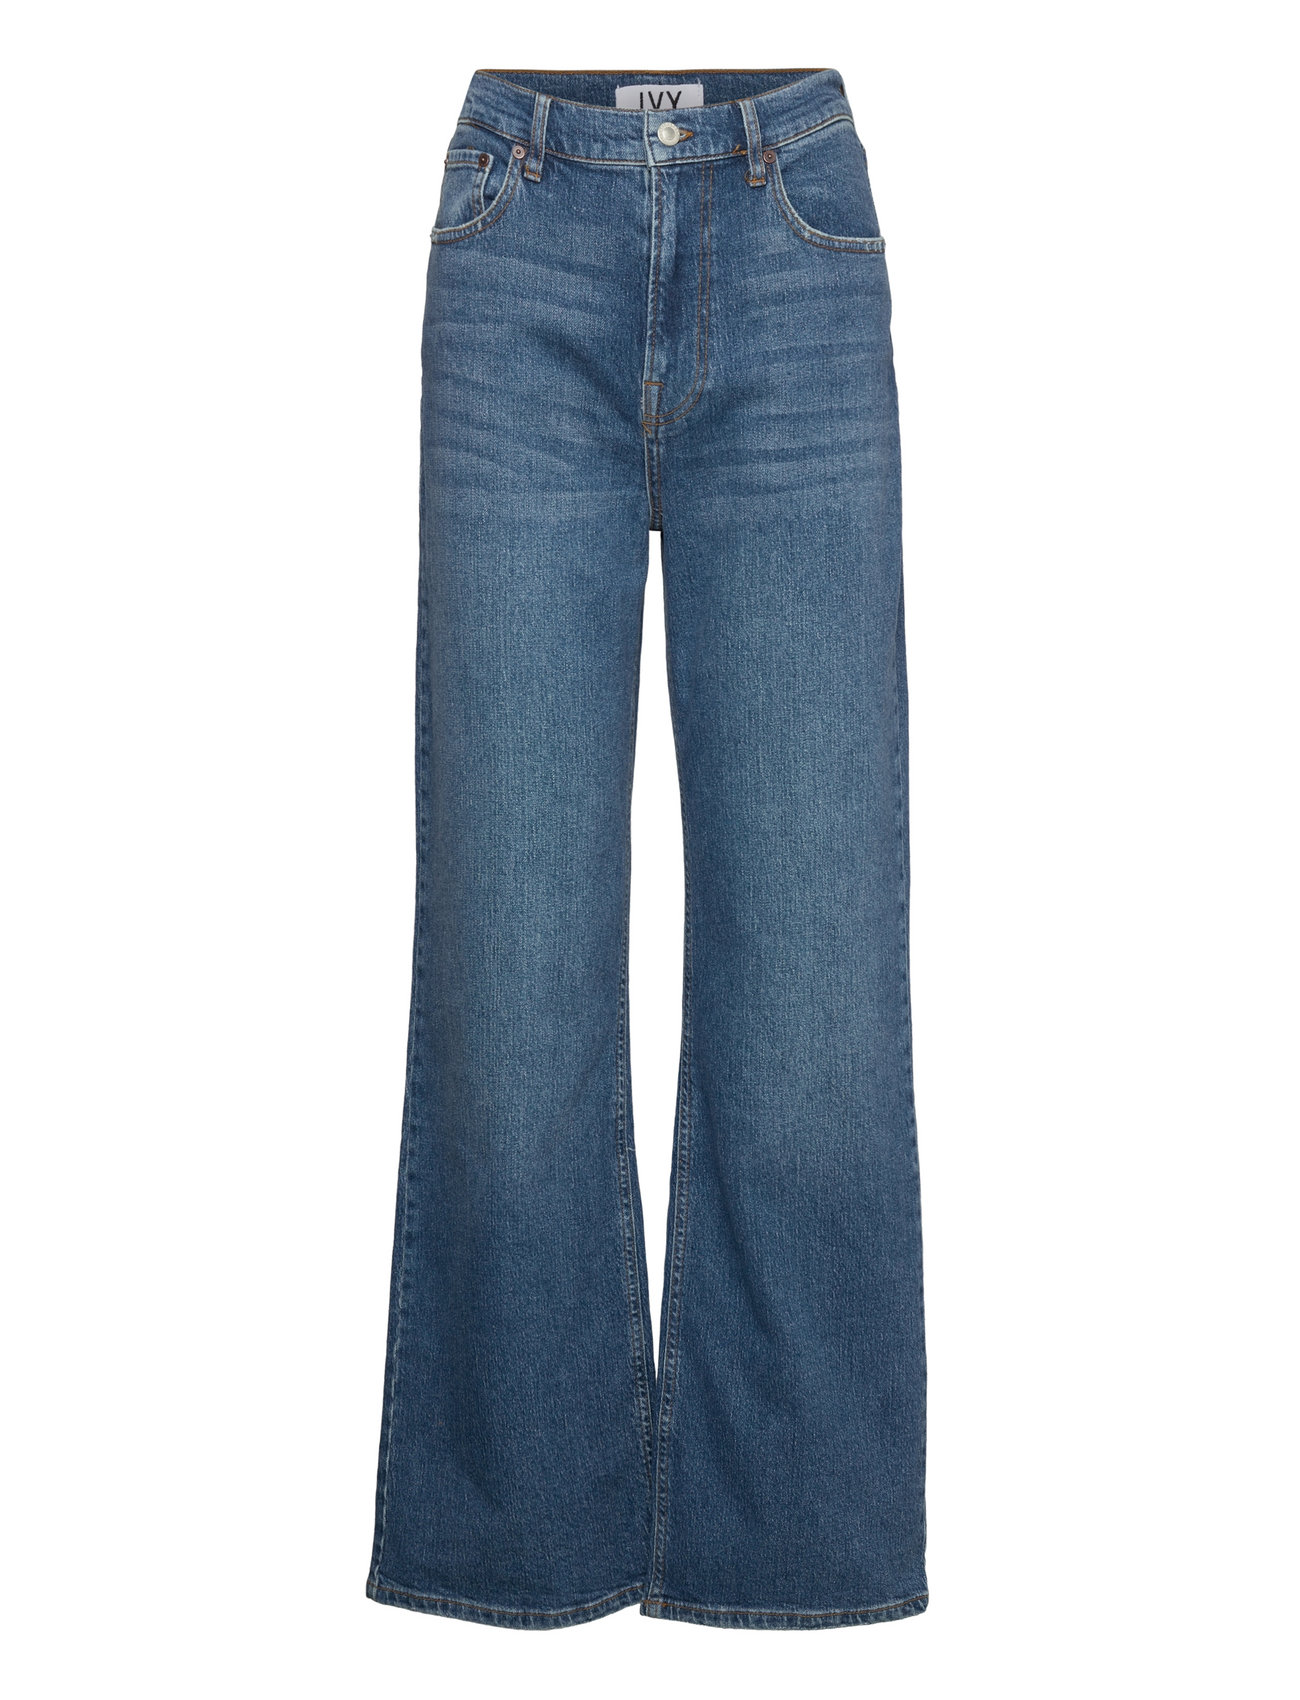 IVY Copenhagen Brooke Earthxswan Jeans Wash Organi - Jeans - Booztlet.com